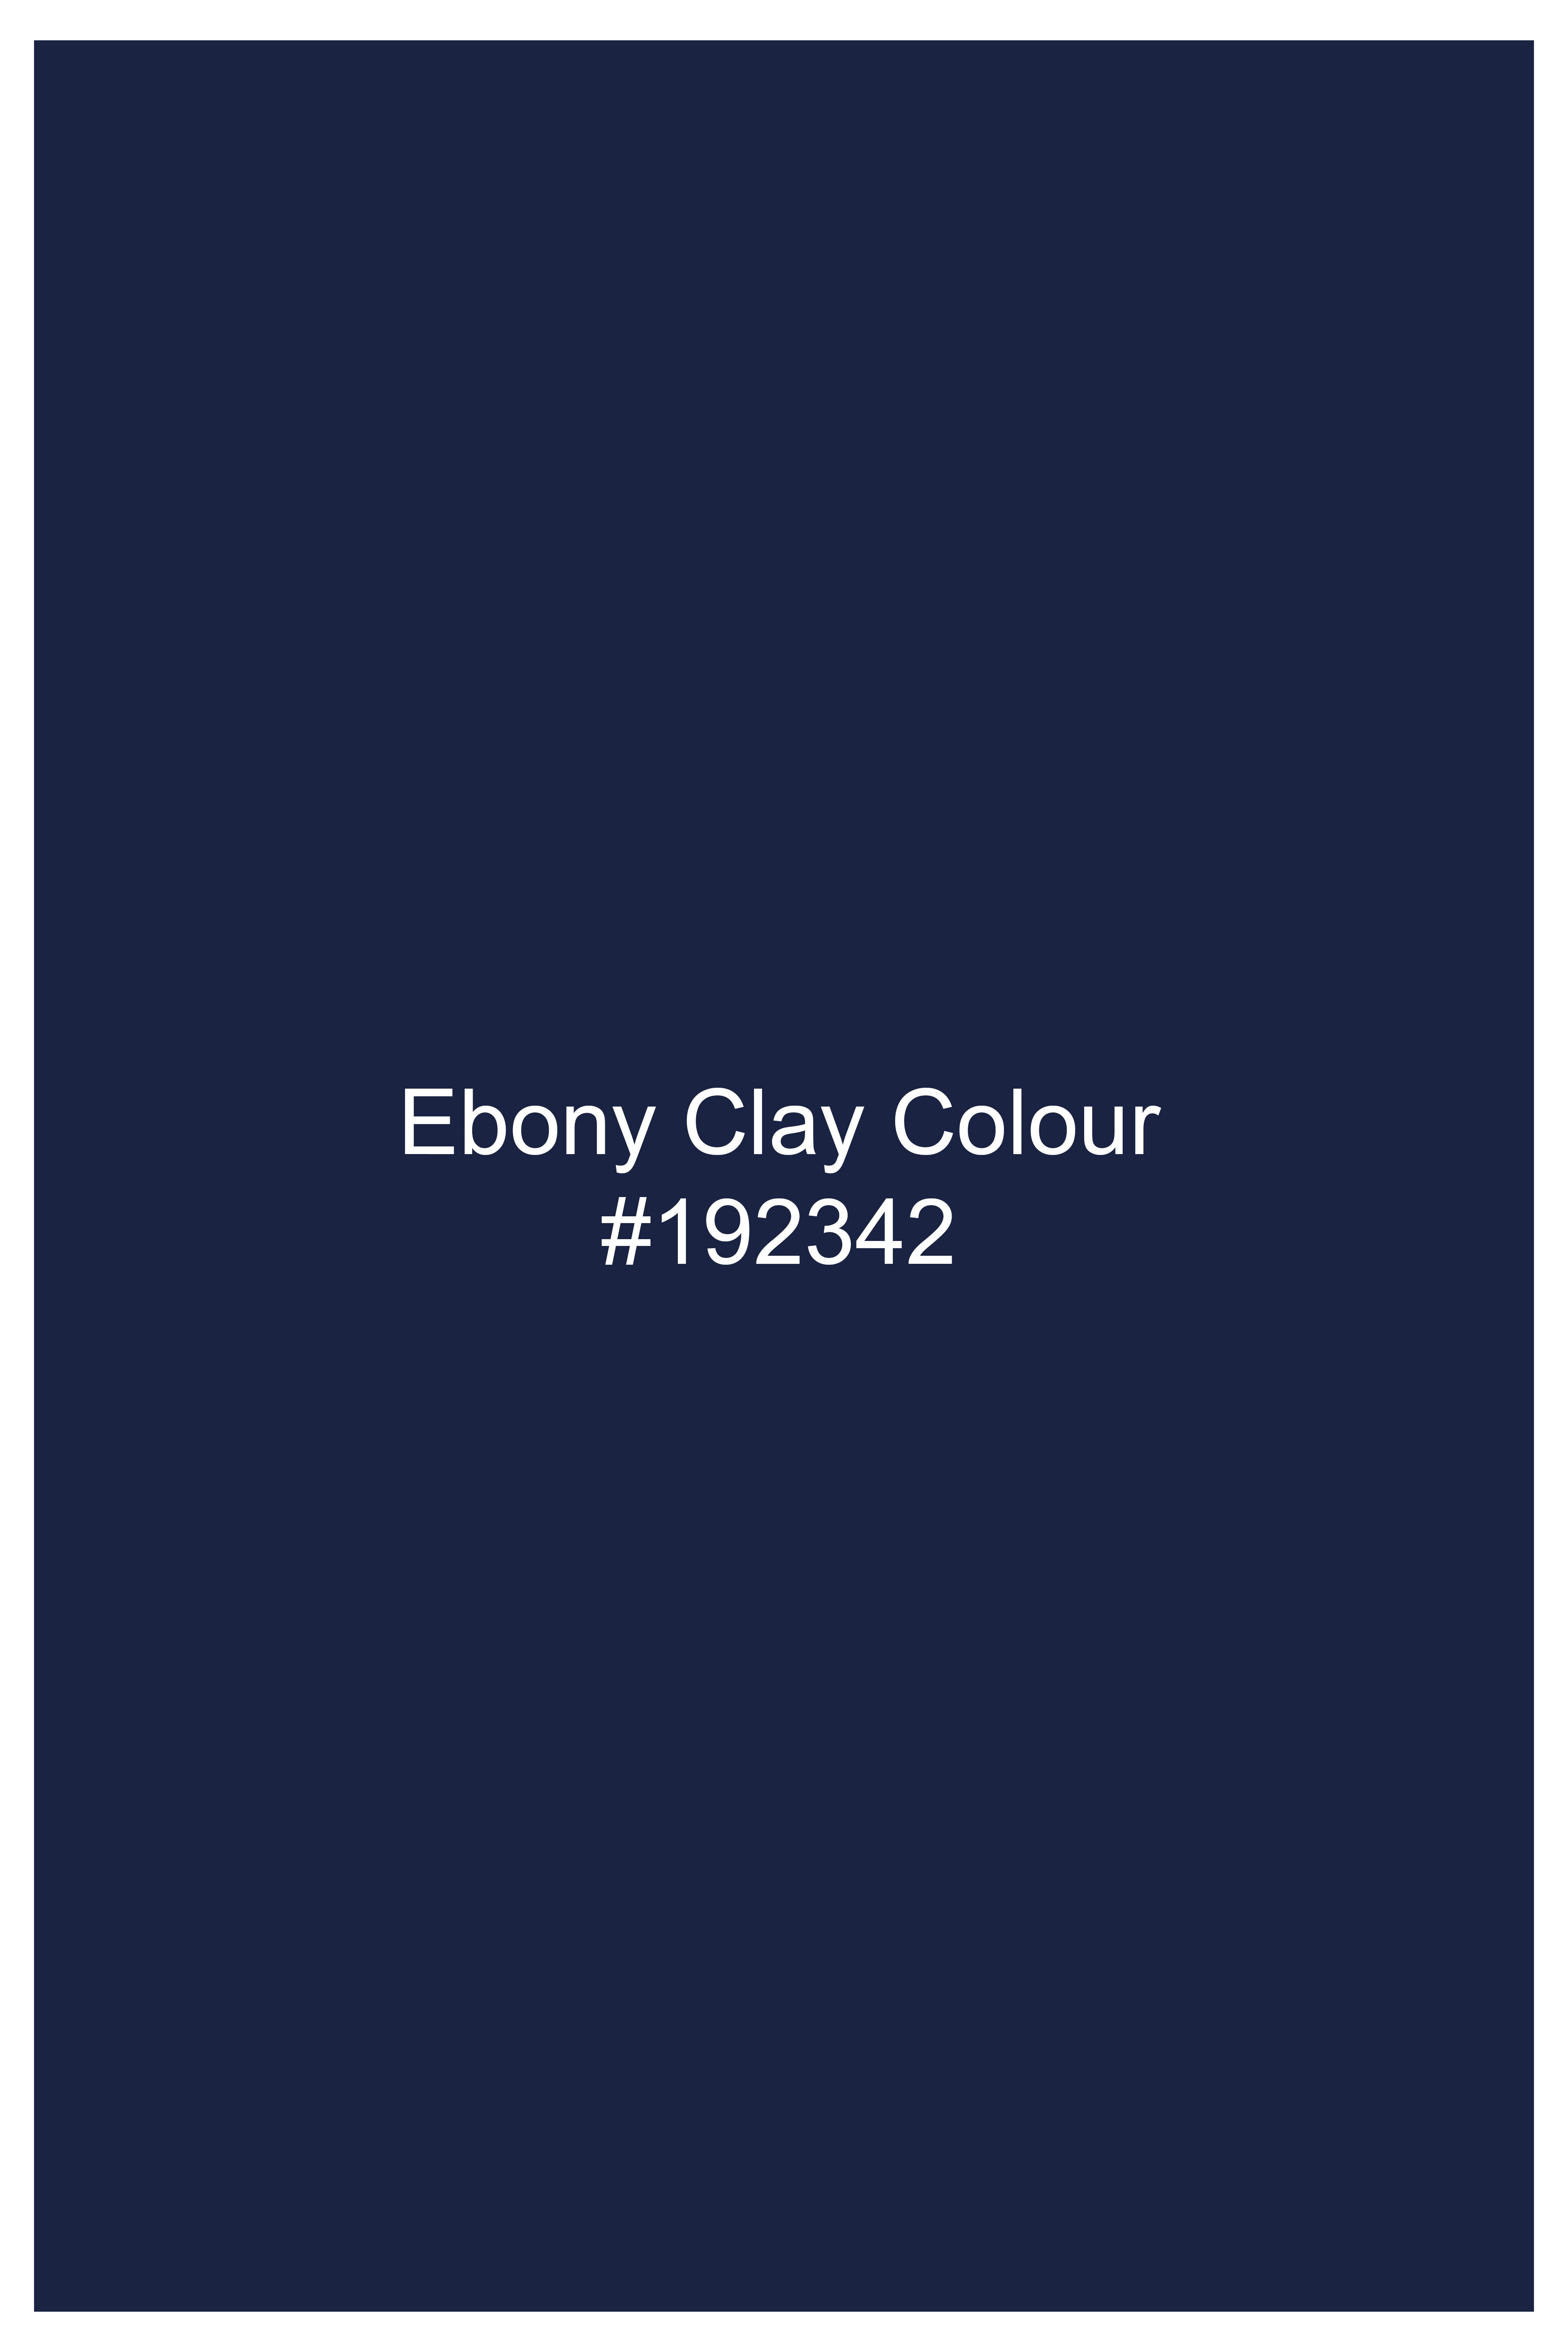 Ebony Clay Blue Striped Wool Rich Bandhgala Blazer BL3088-BG-36, BL3088-BG-38, BL3088-BG-40, BL3088-BG-42, BL3088-BG-44, BL3088-BG-46, BL3088-BG-48, BL3088-BG-50, BL3088-BG-52, BL3088-BG-54, BL3088-BG-56, BL3088-BG-58, BL3088-BG-60